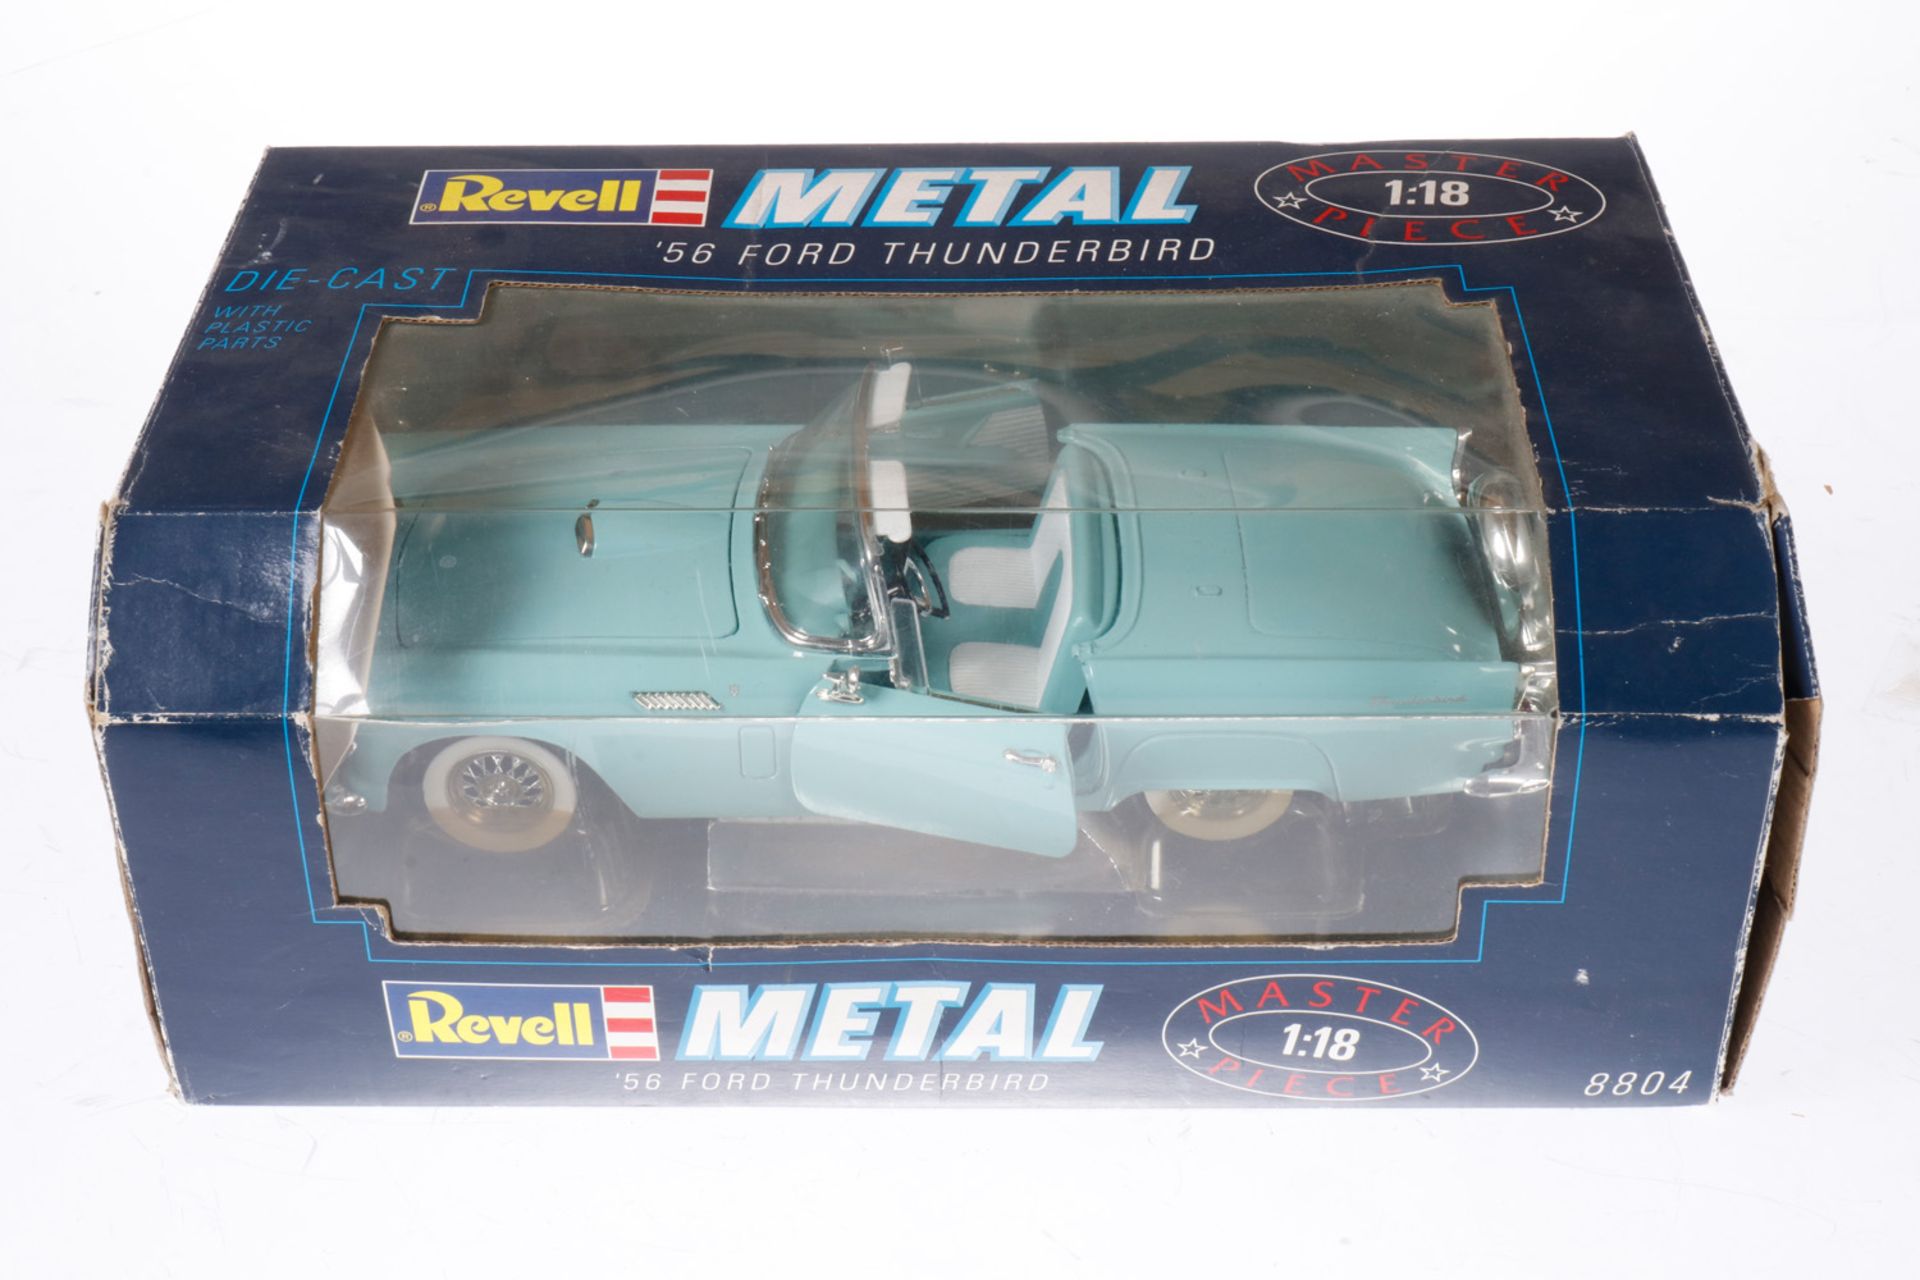 Revell Metal "56 Ford Thunderbird", 1/18, im teilw. besch. OK, Alterungs- und Gebrauchsspuren, Z 2